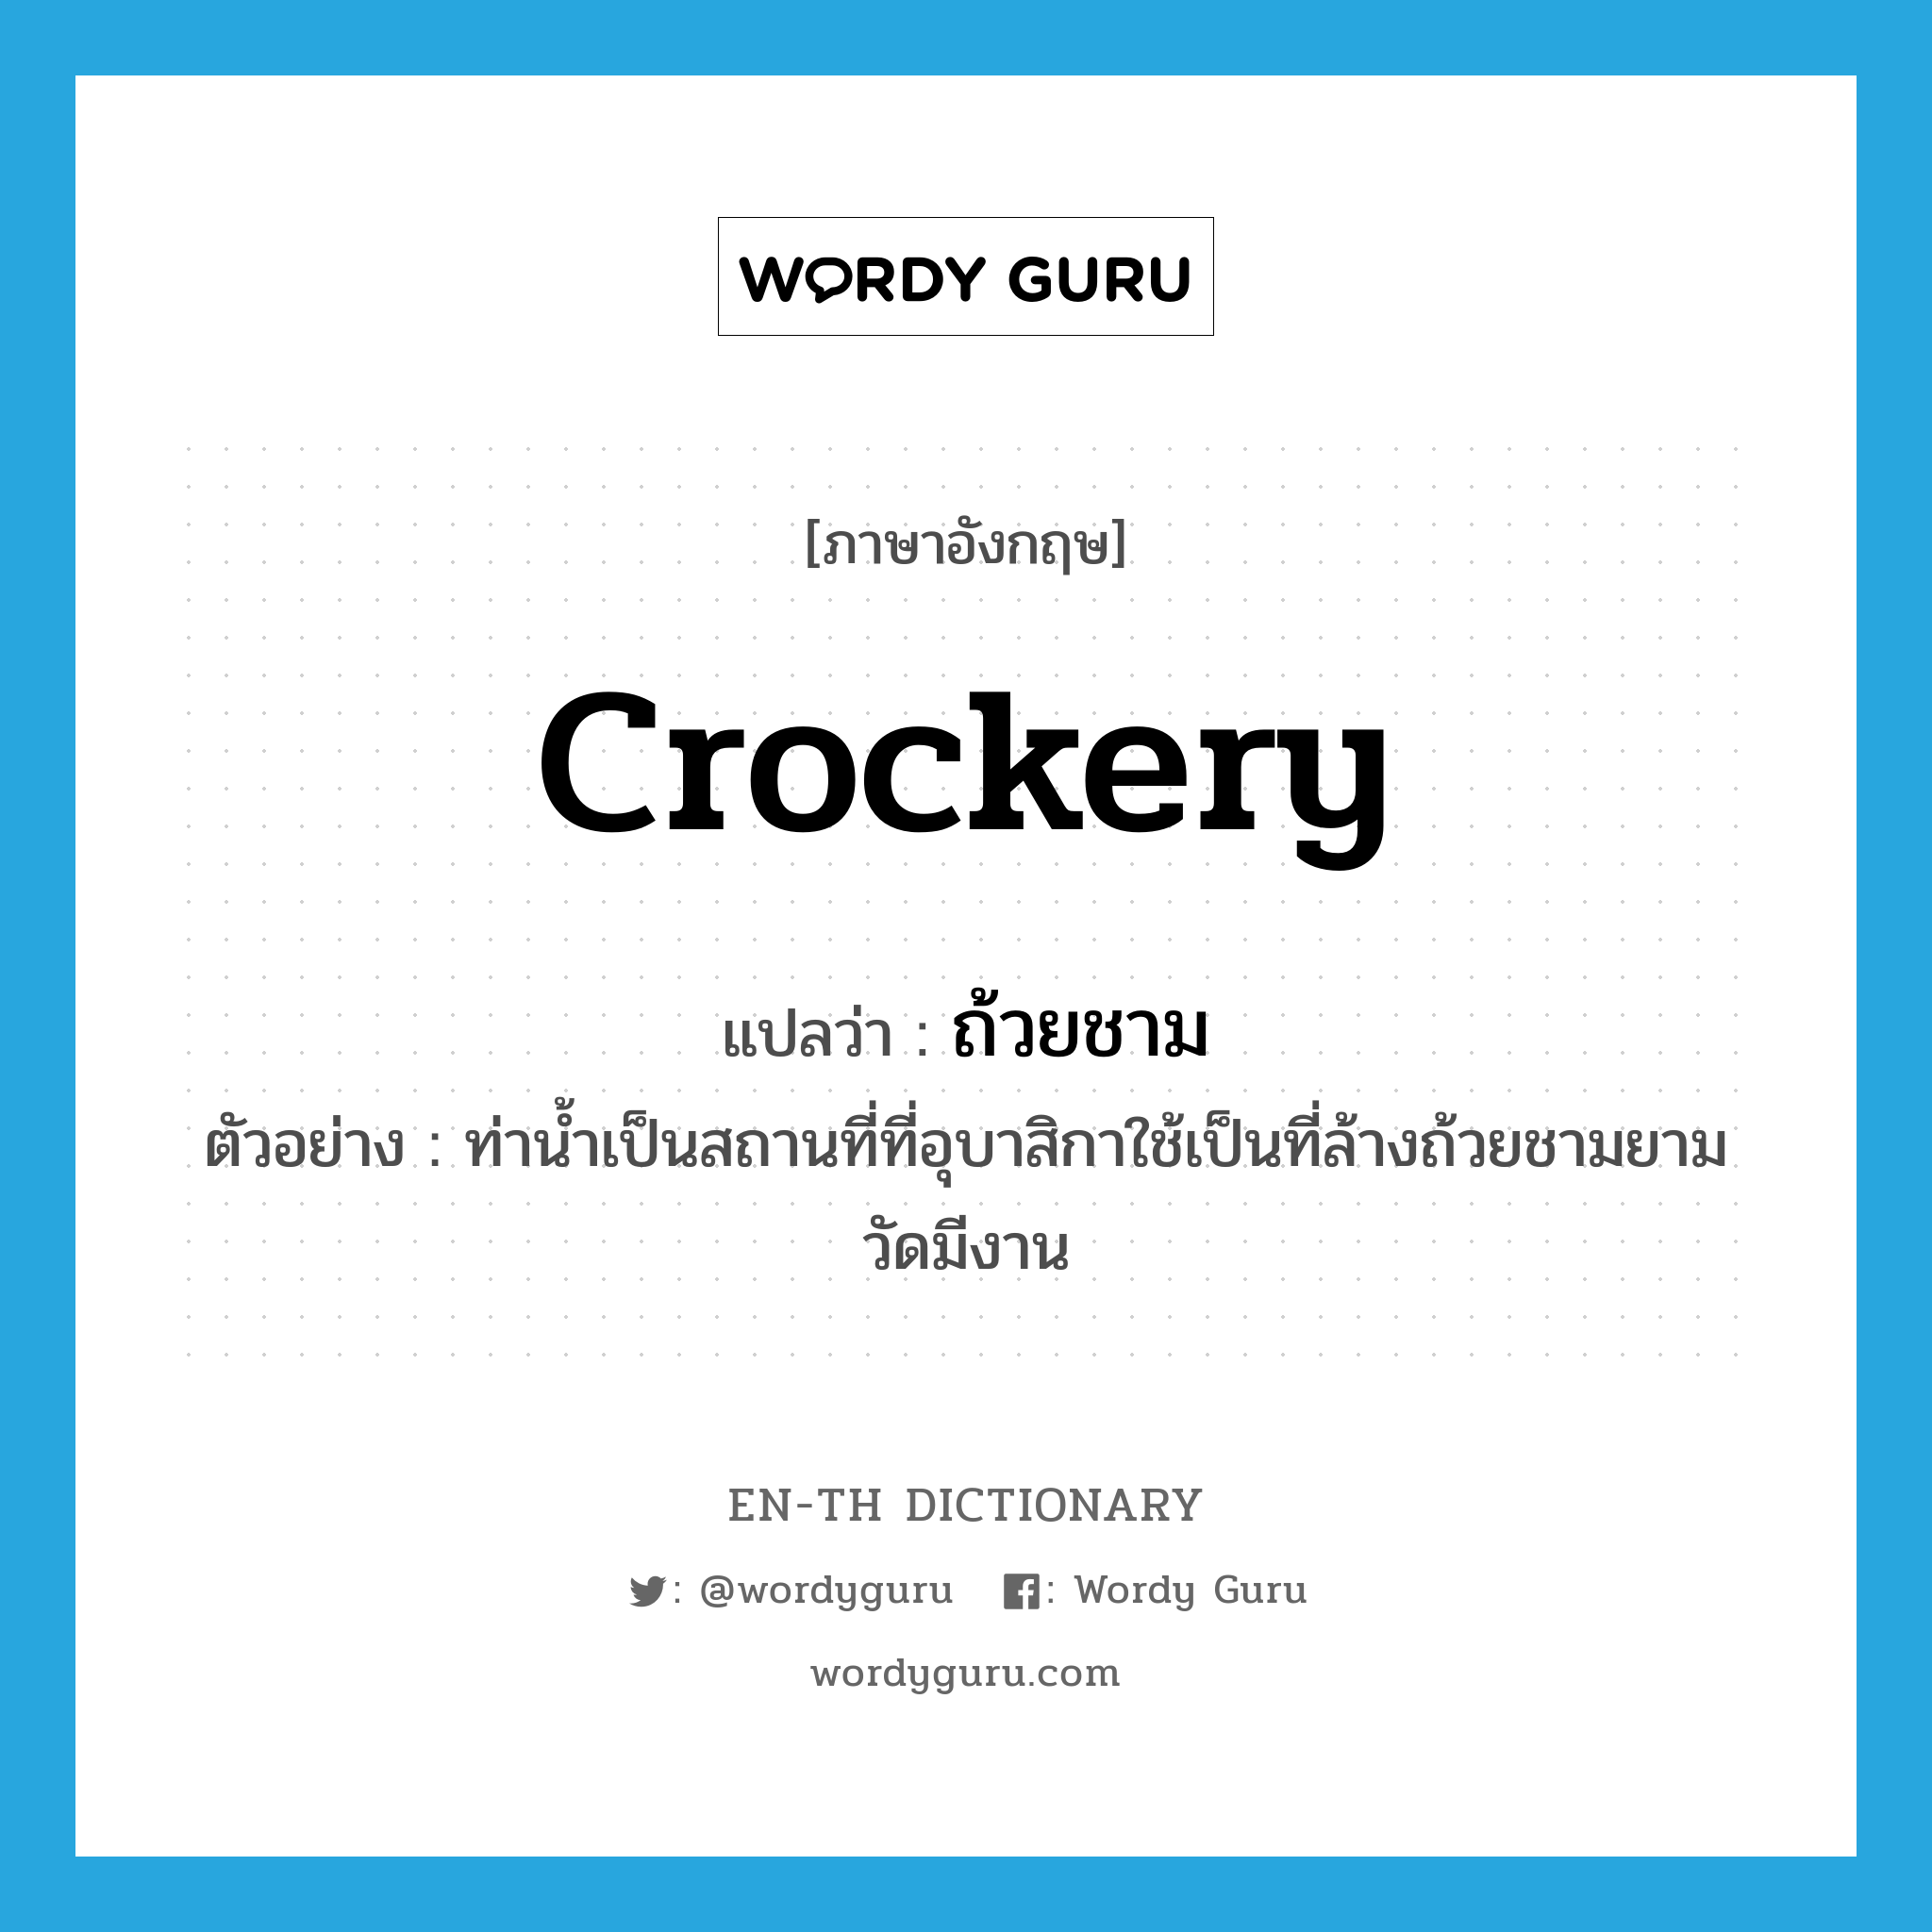 crockery แปลว่า?, คำศัพท์ภาษาอังกฤษ crockery แปลว่า ถ้วยชาม ประเภท N ตัวอย่าง ท่าน้ำเป็นสถานที่ที่อุบาสิกาใช้เป็นที่ล้างถ้วยชามยามวัดมีงาน หมวด N